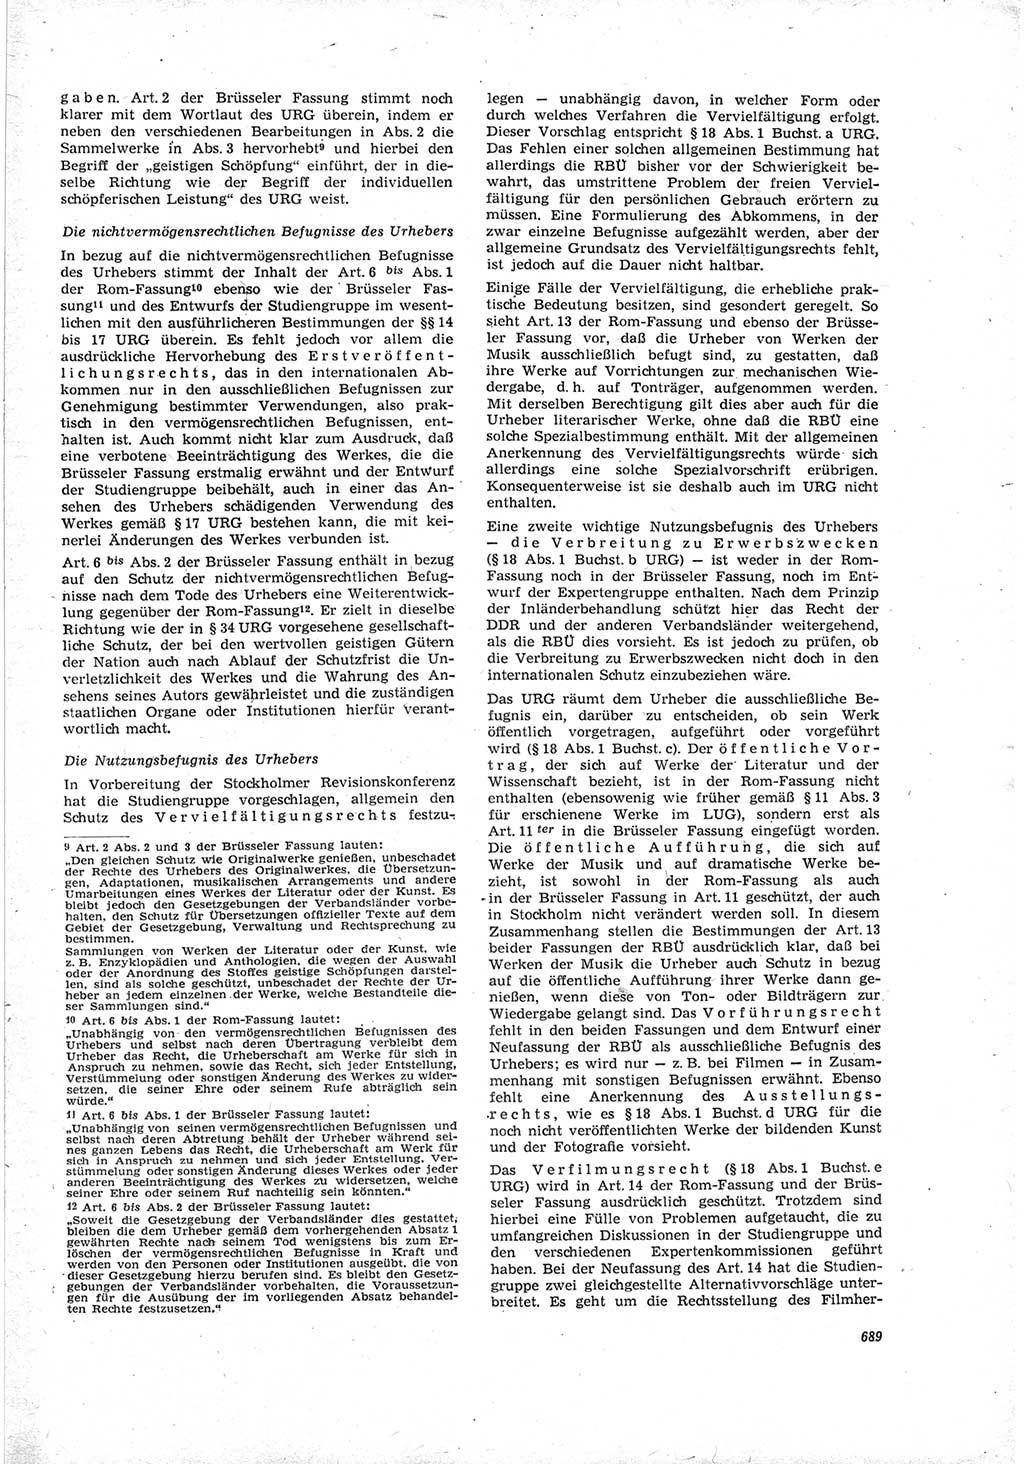 Neue Justiz (NJ), Zeitschrift für Recht und Rechtswissenschaft [Deutsche Demokratische Republik (DDR)], 19. Jahrgang 1965, Seite 689 (NJ DDR 1965, S. 689)